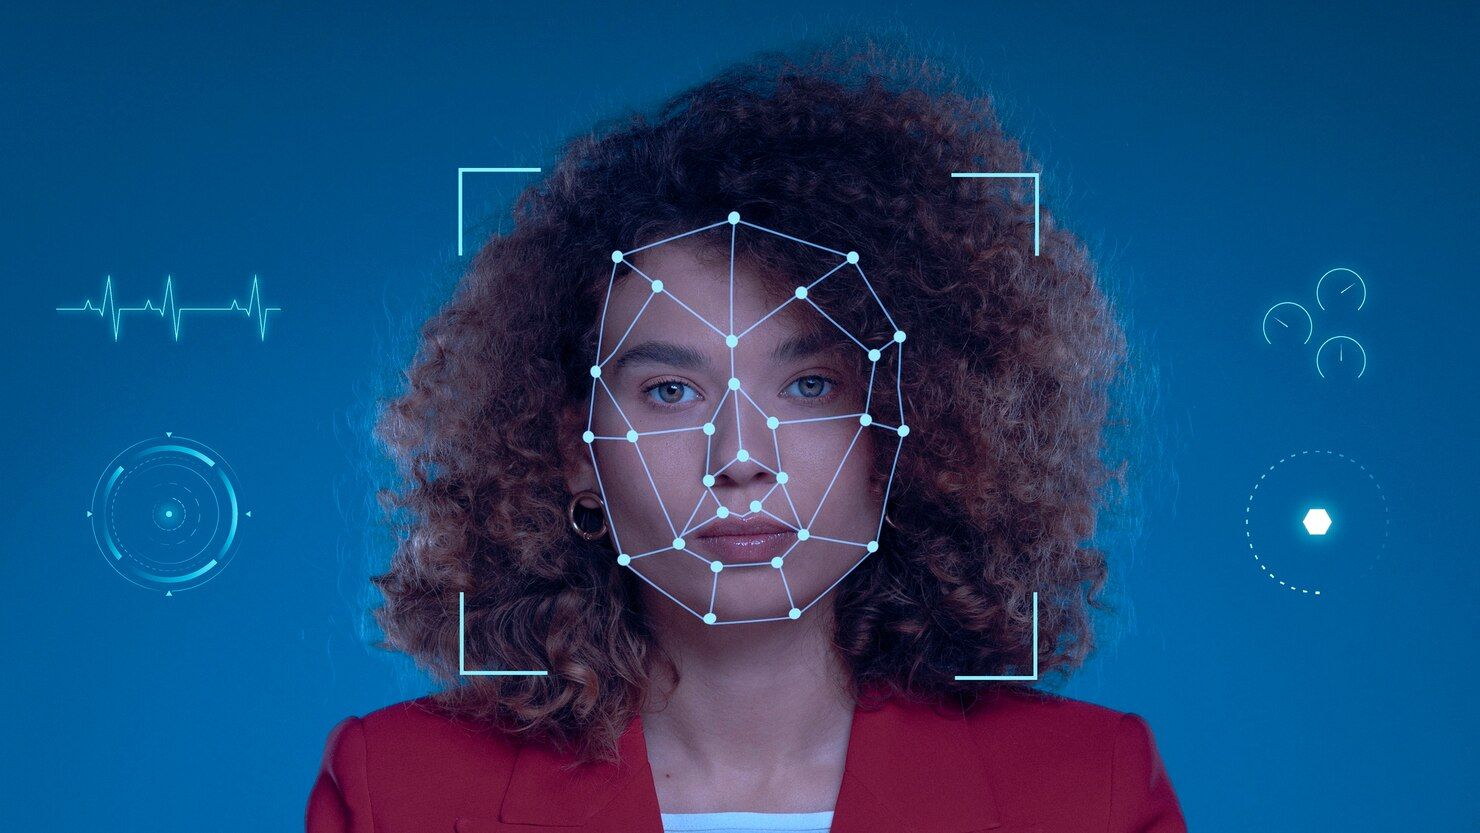 Rosto de mulher com sobreposição de malha de reconhecimento facial digital, cercado por vários ícones relacionados à tecnologia em um fundo azul.